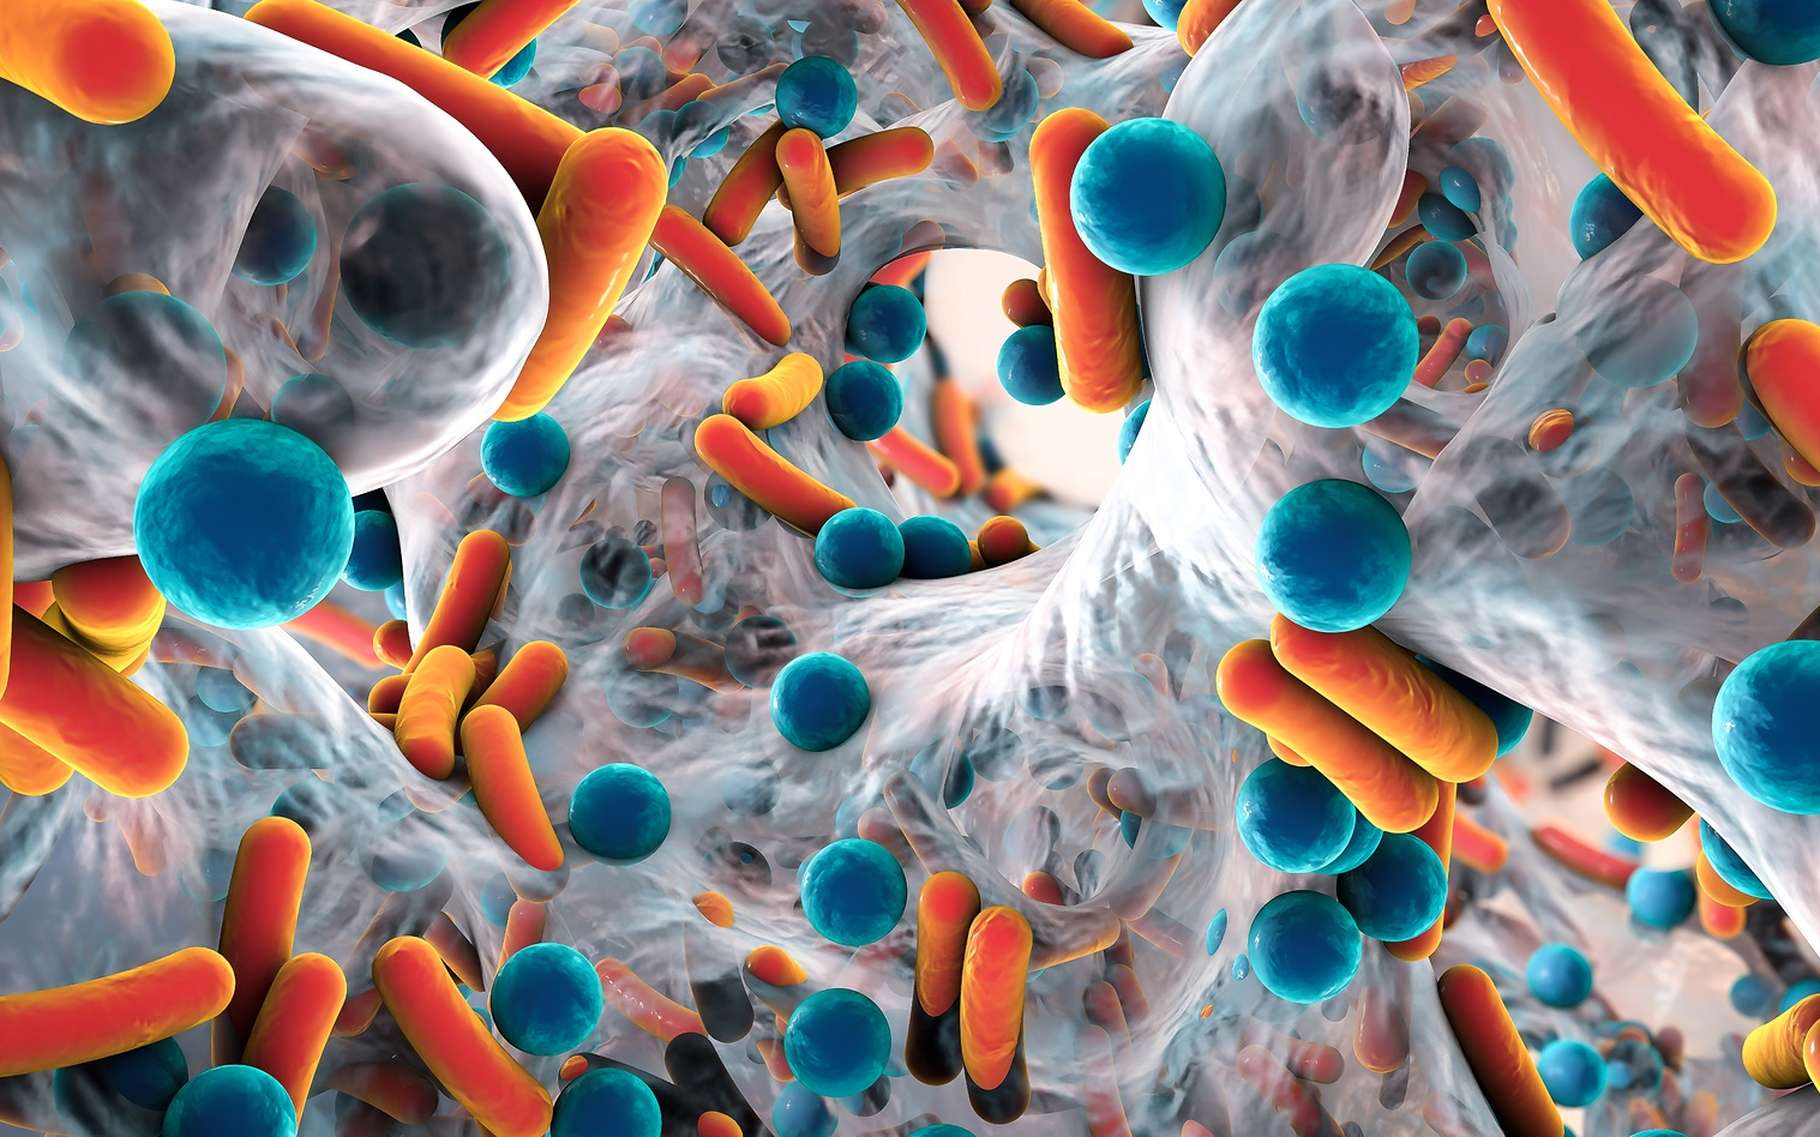 Les bactéries « superbugs » qui résistent aux traitements antibiotiques, représentent un enjeu de santé publique. © Kateryna Kon, Shutterstock